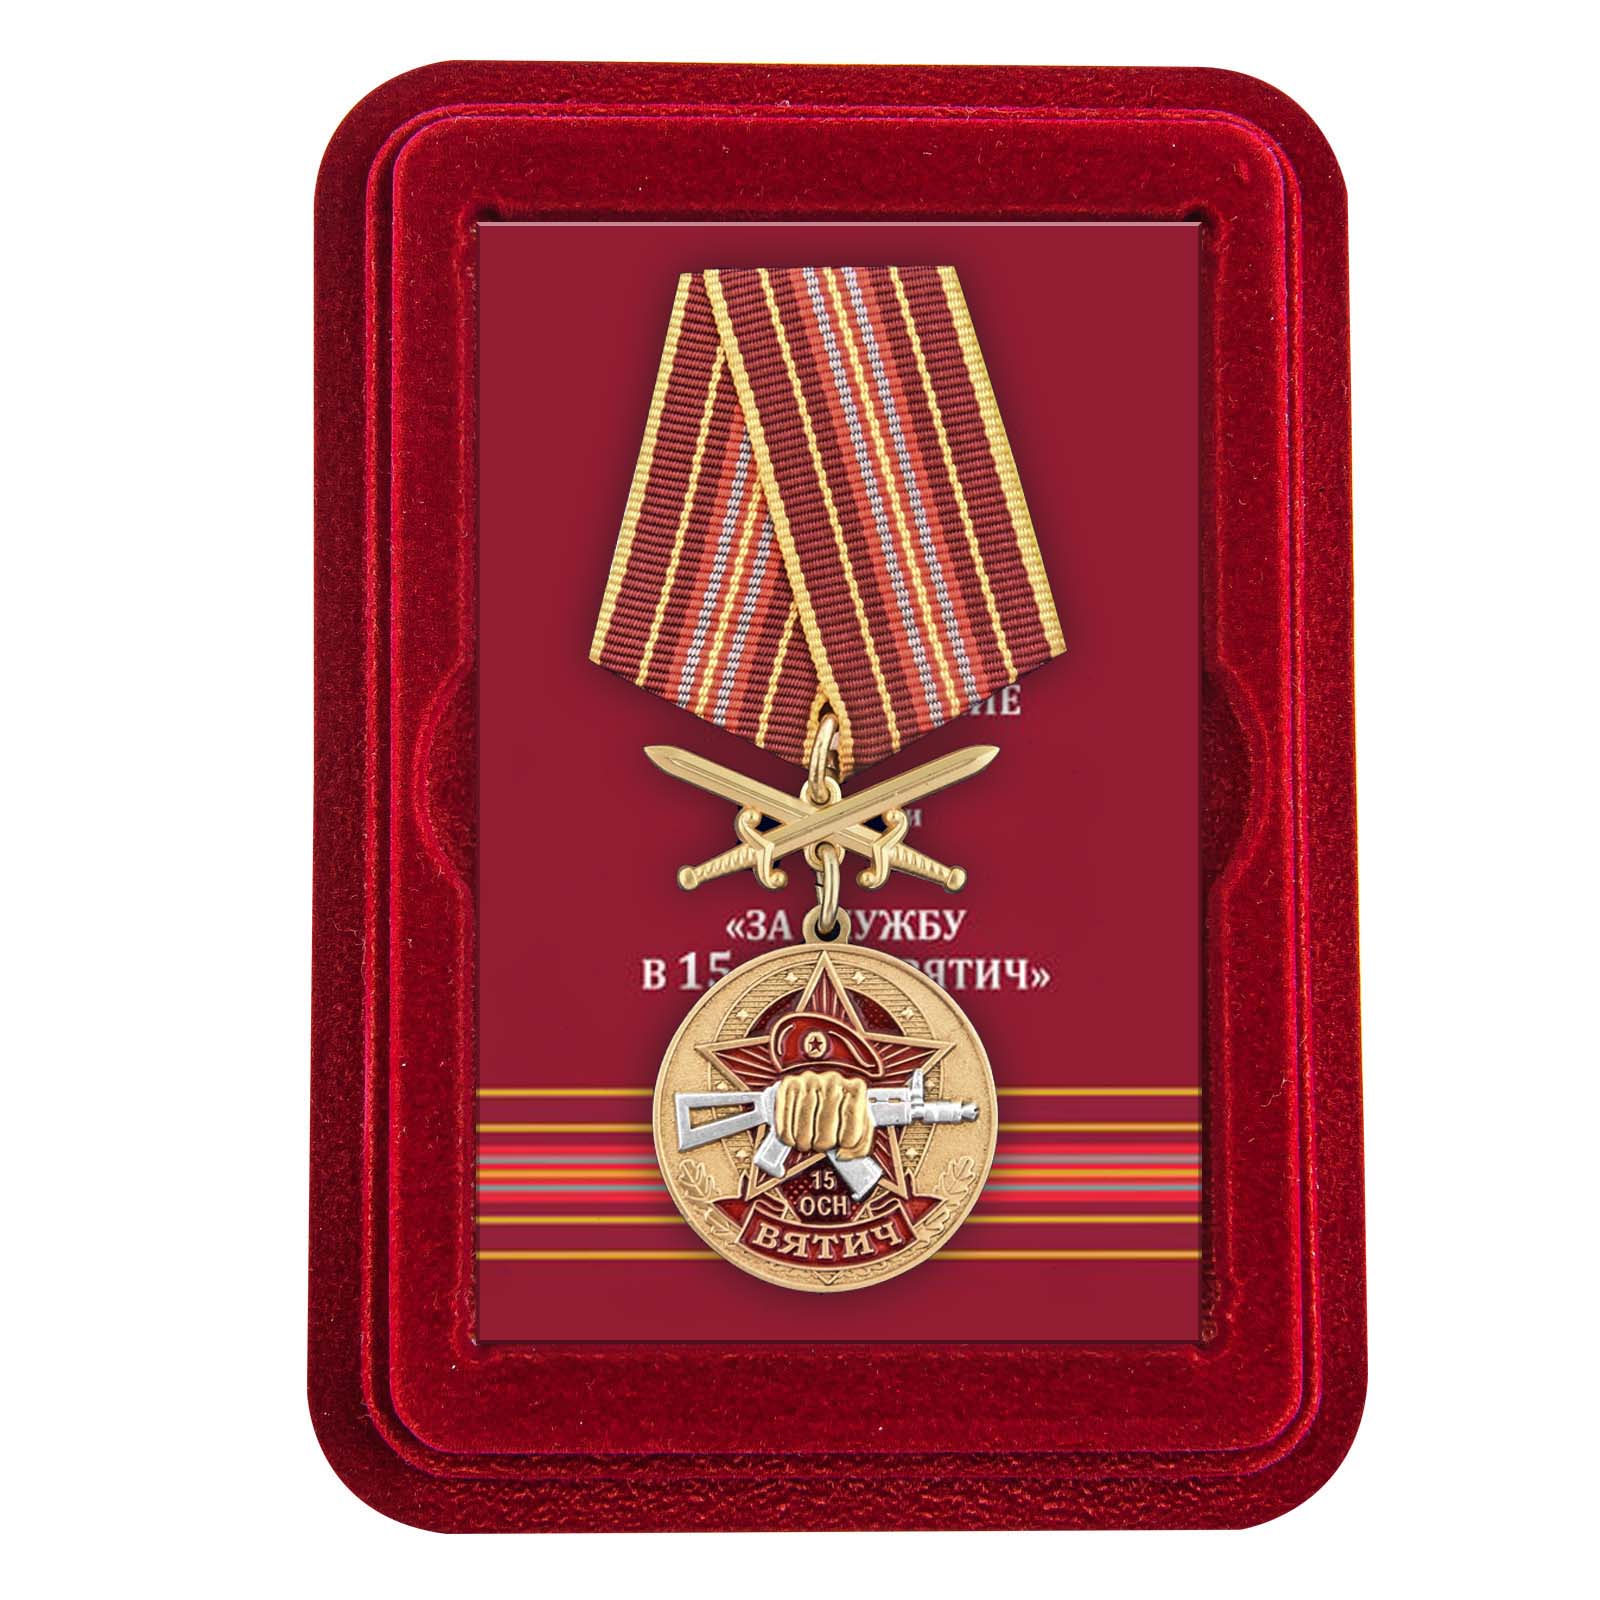 Медаль За службу в 15 ОСН "Вятич" в футляре из флока